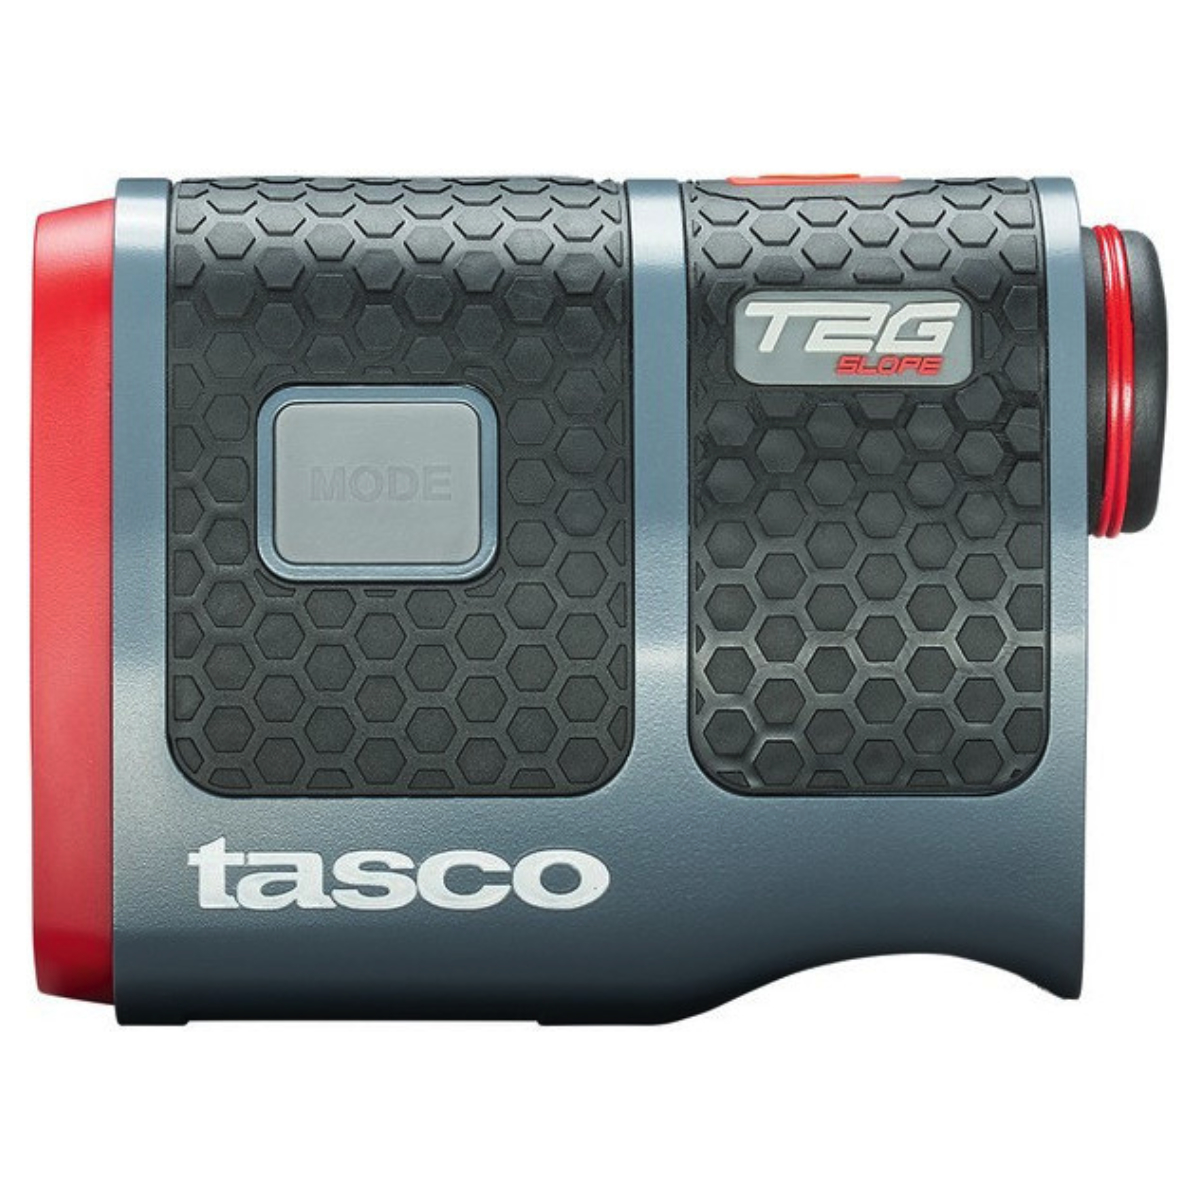 Tasco Laser T2G Tour Slope Black/Red